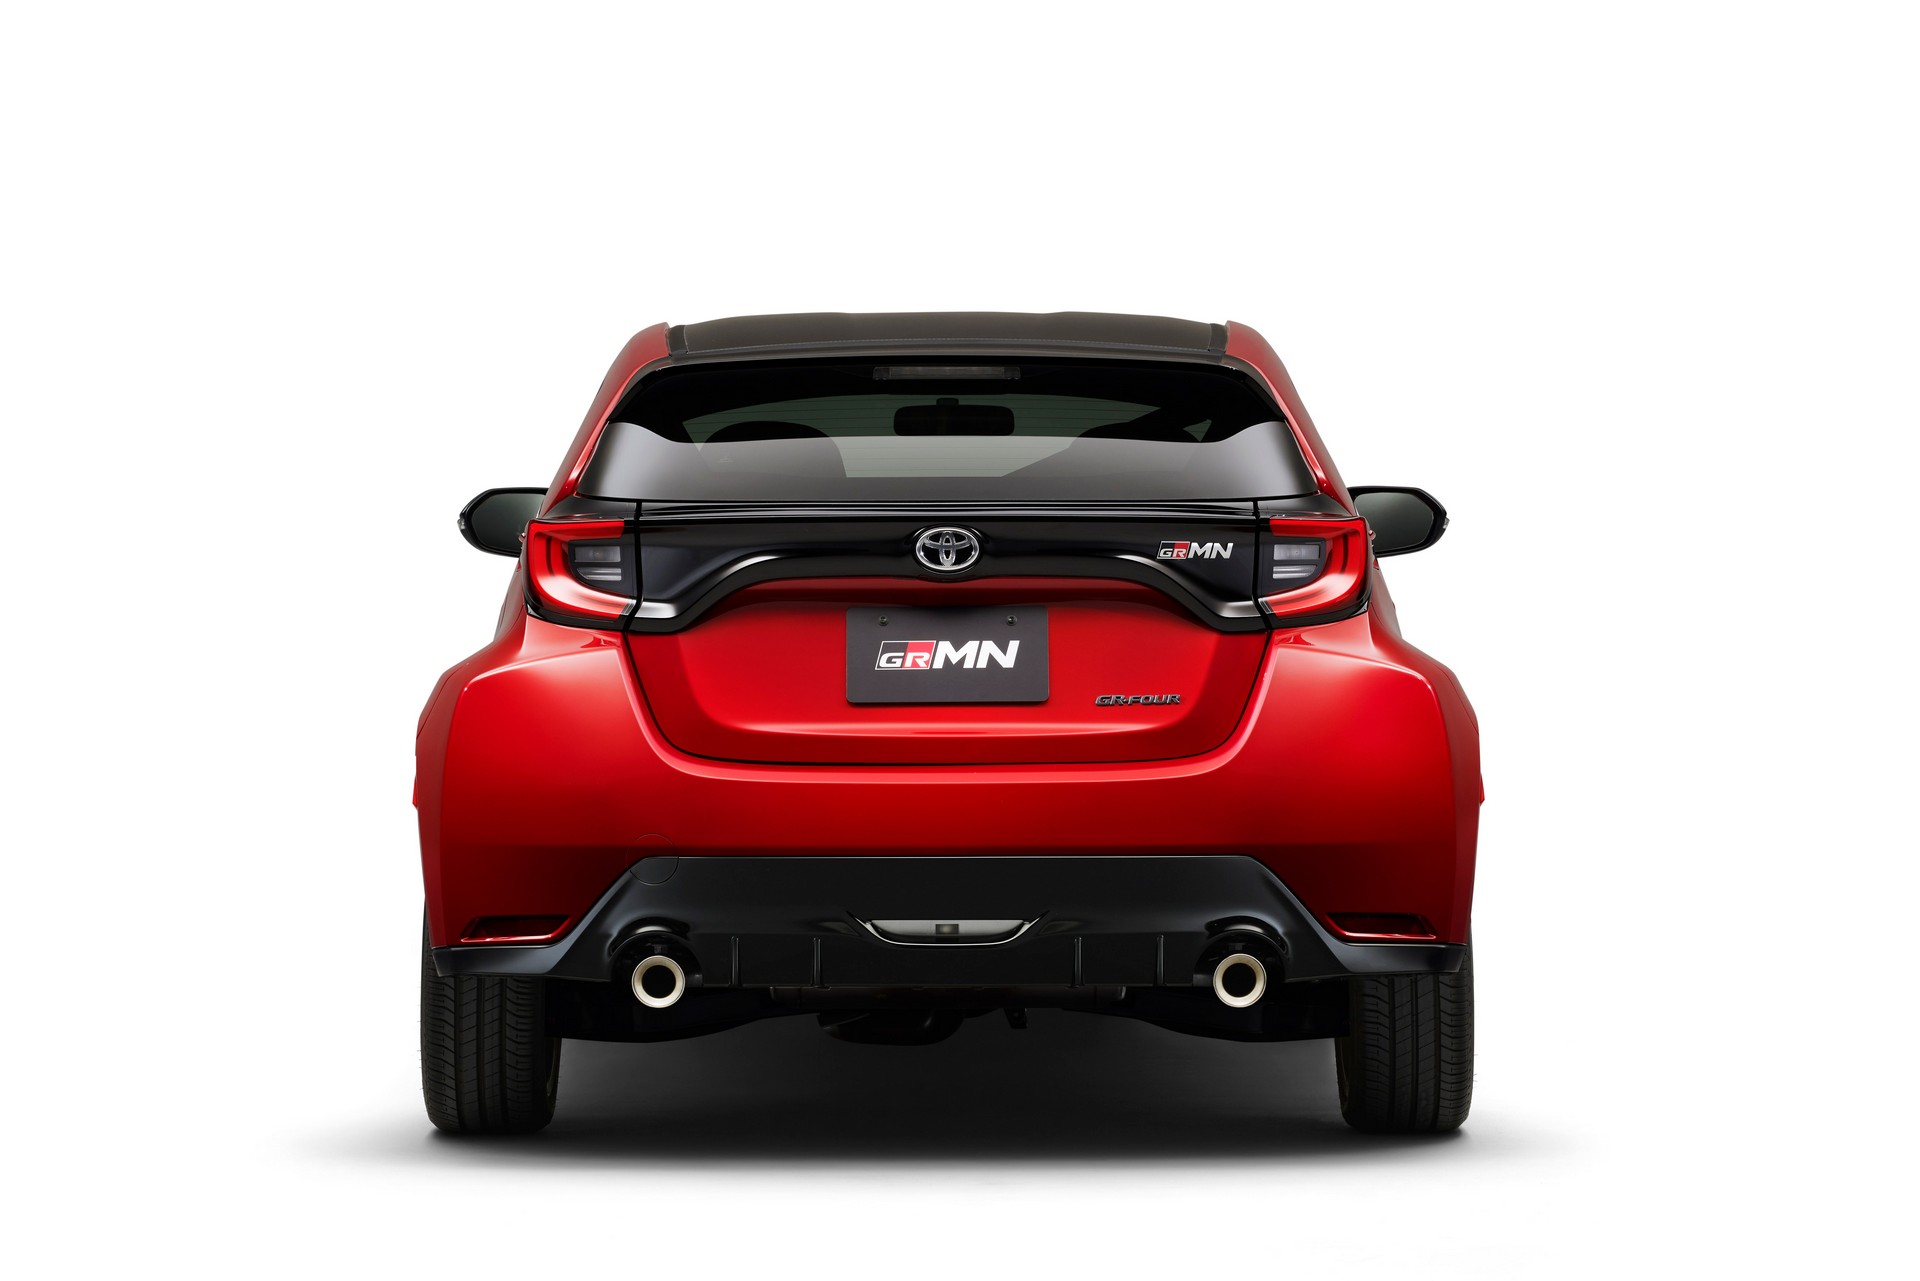 Toyota Yaris GRMN tanıtıldı: Sadece 500 adet üretilecek